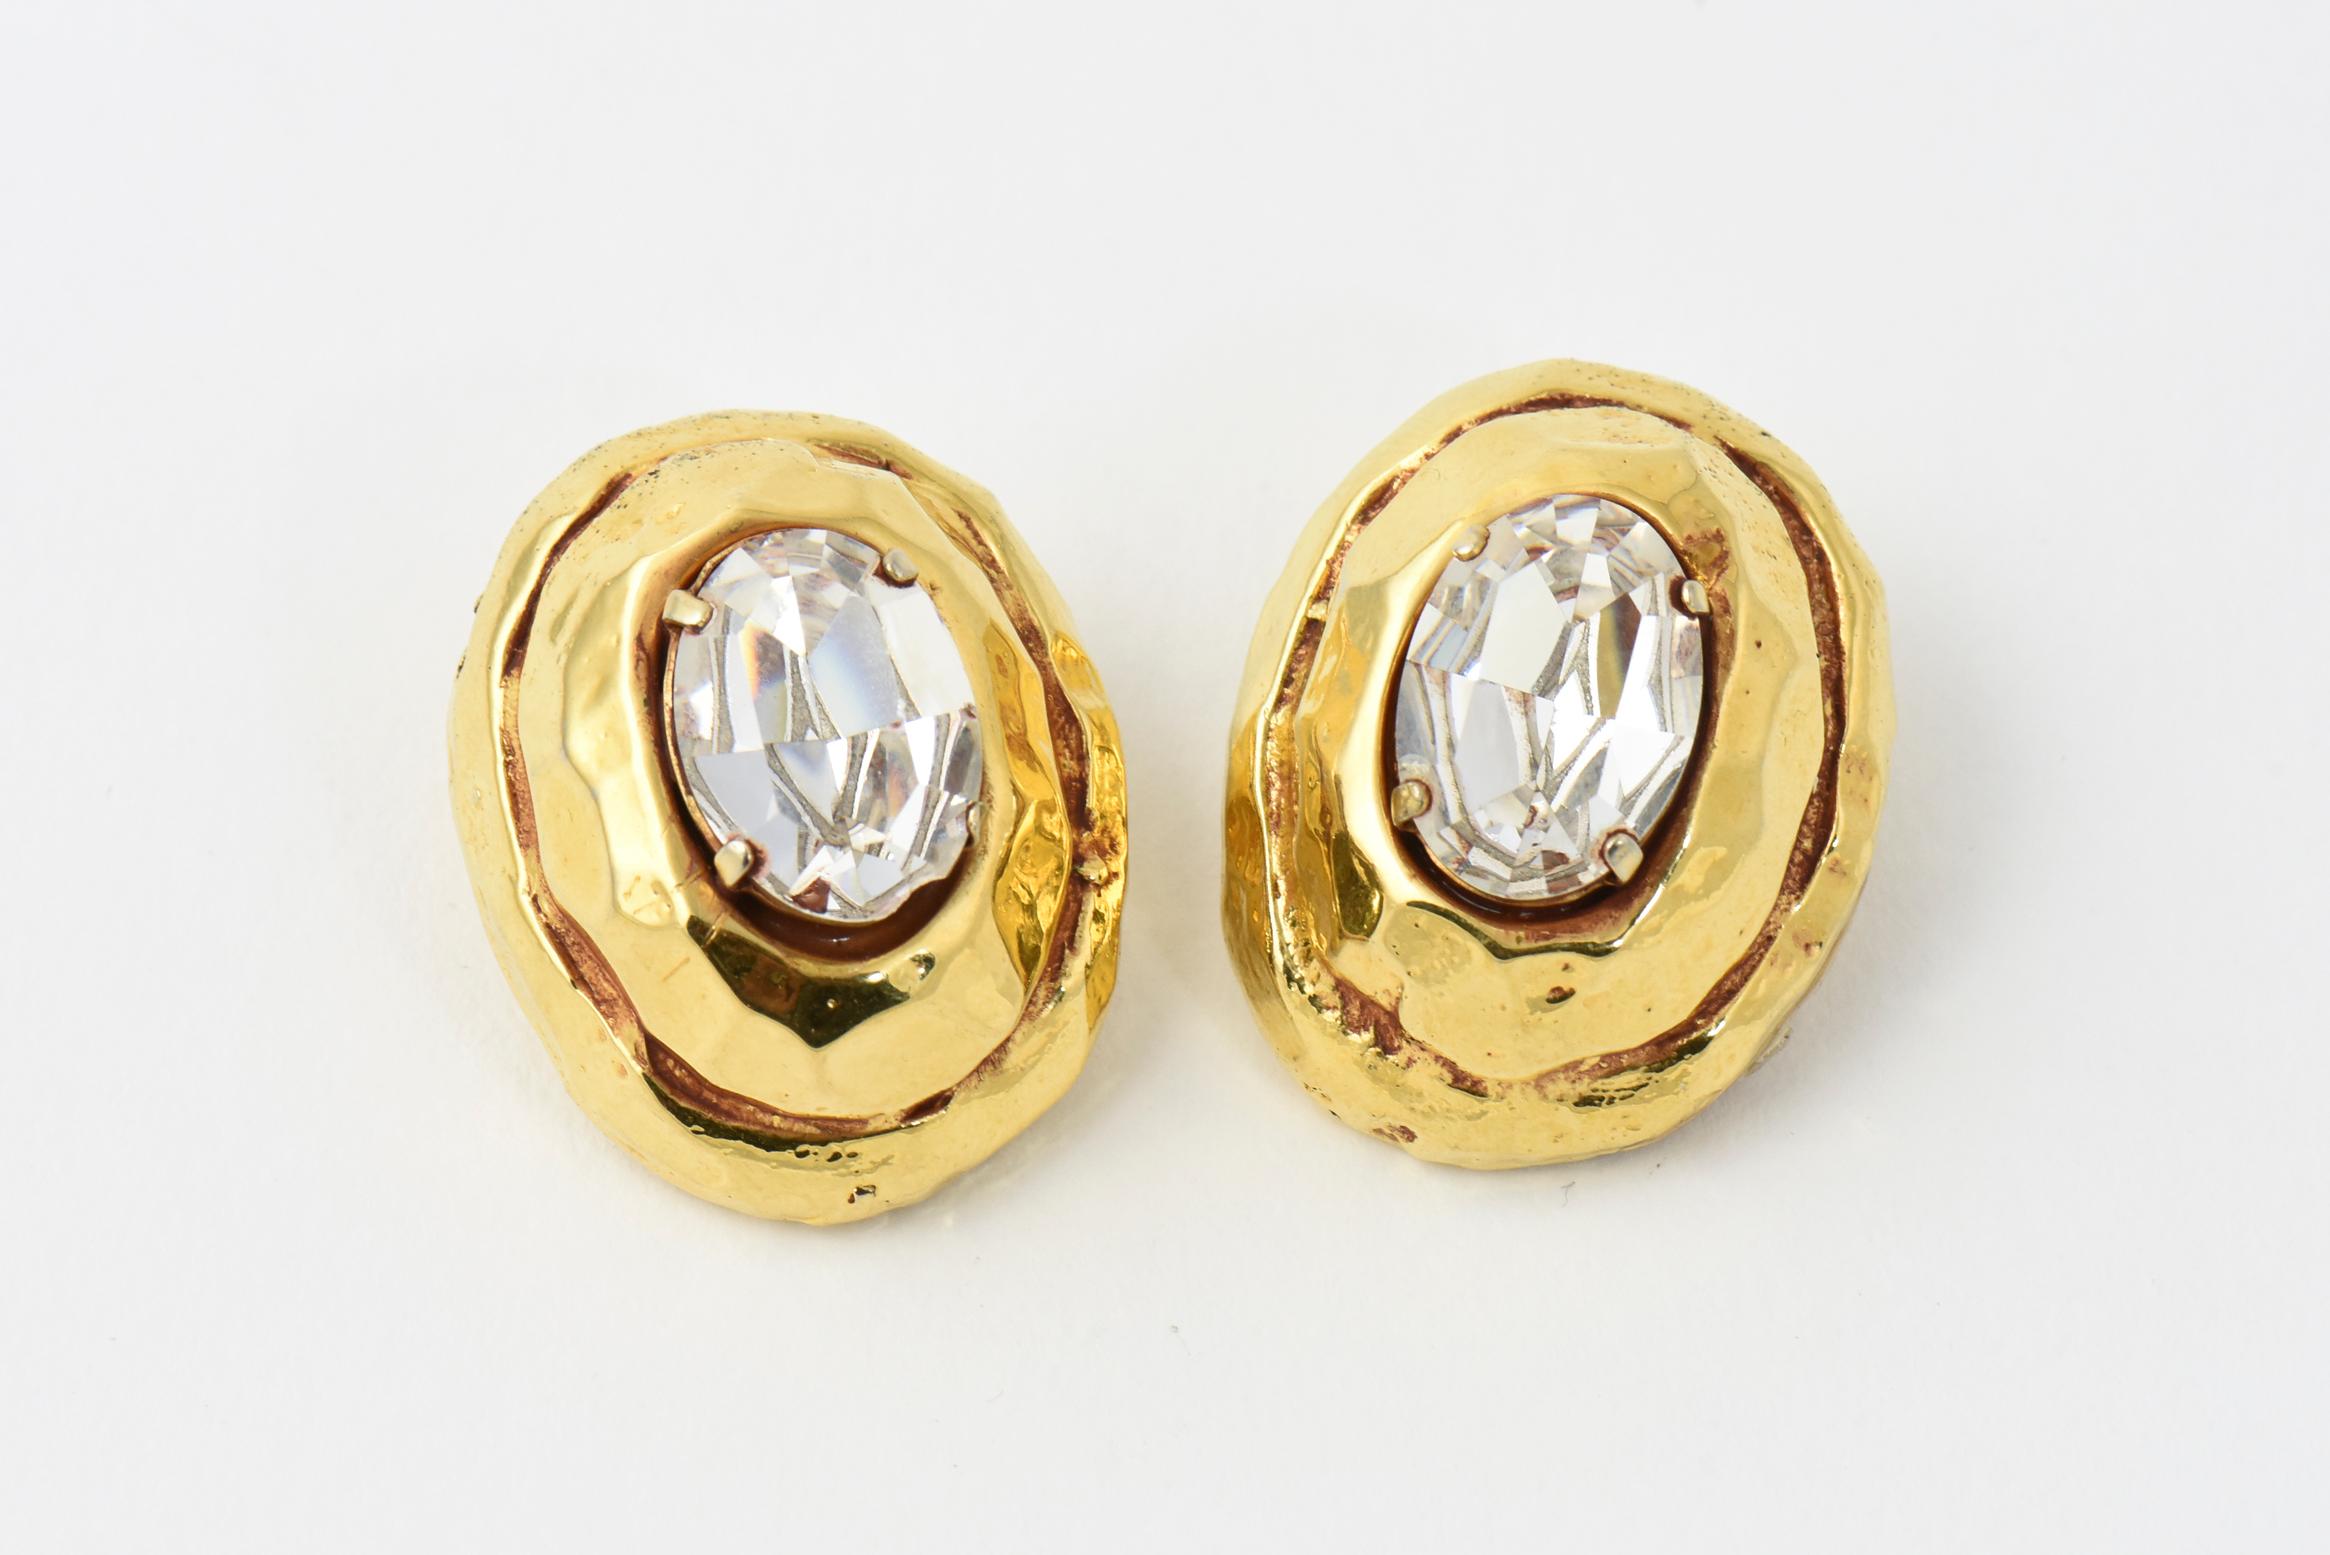 Kalinger Paris hammered goldtone earrings with large oval Swarovski crystal centers, circa 1985. Signed Kalinger Paris. Clip backs.
